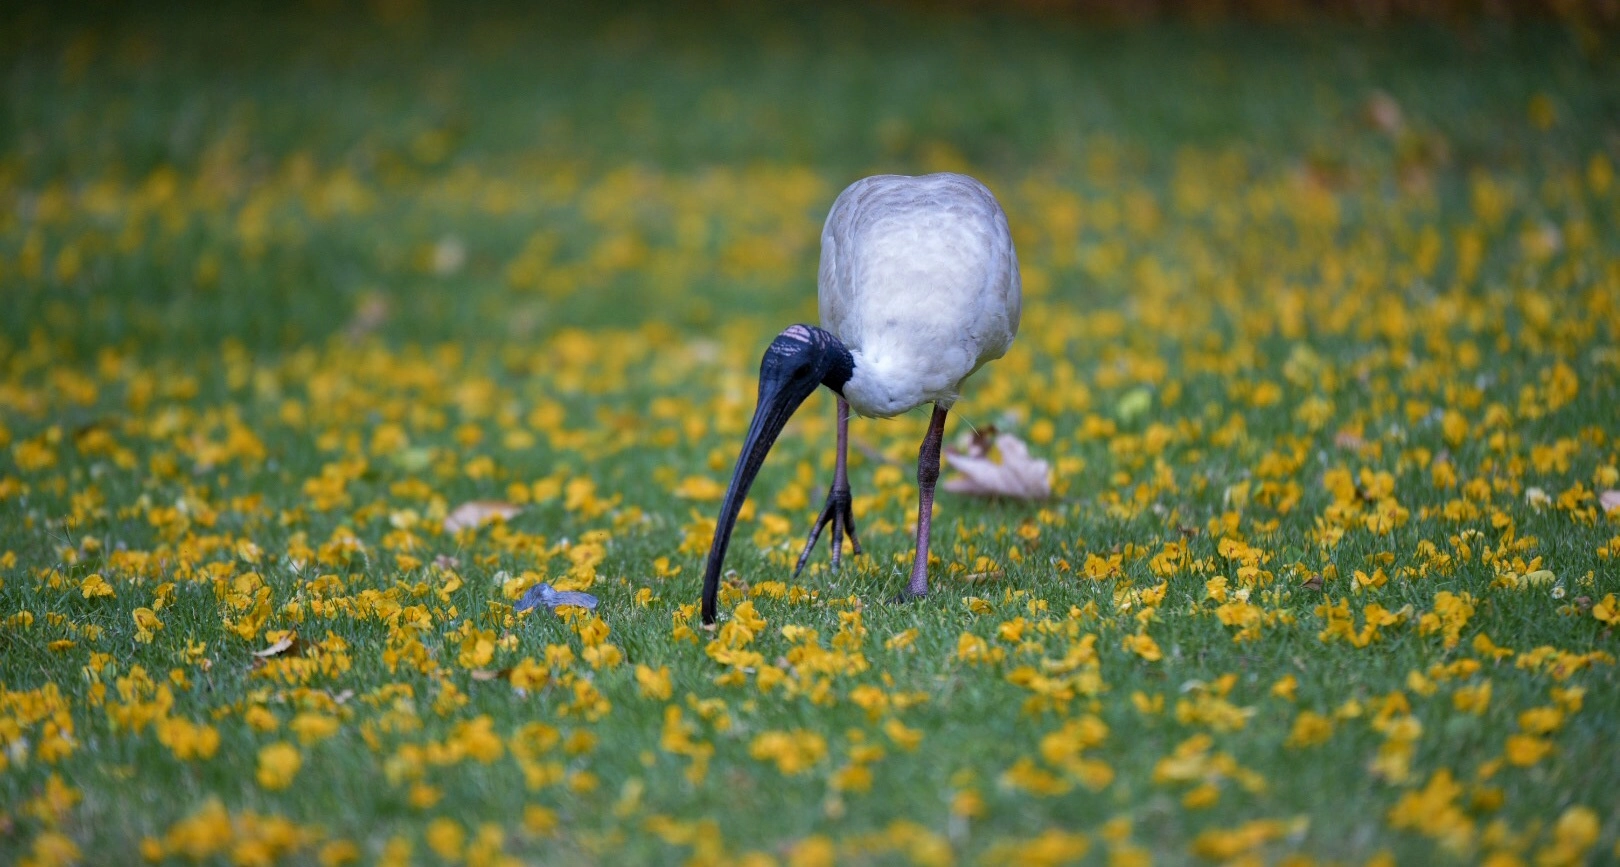 Nikon D750 sample photo. Australian white ibis photography